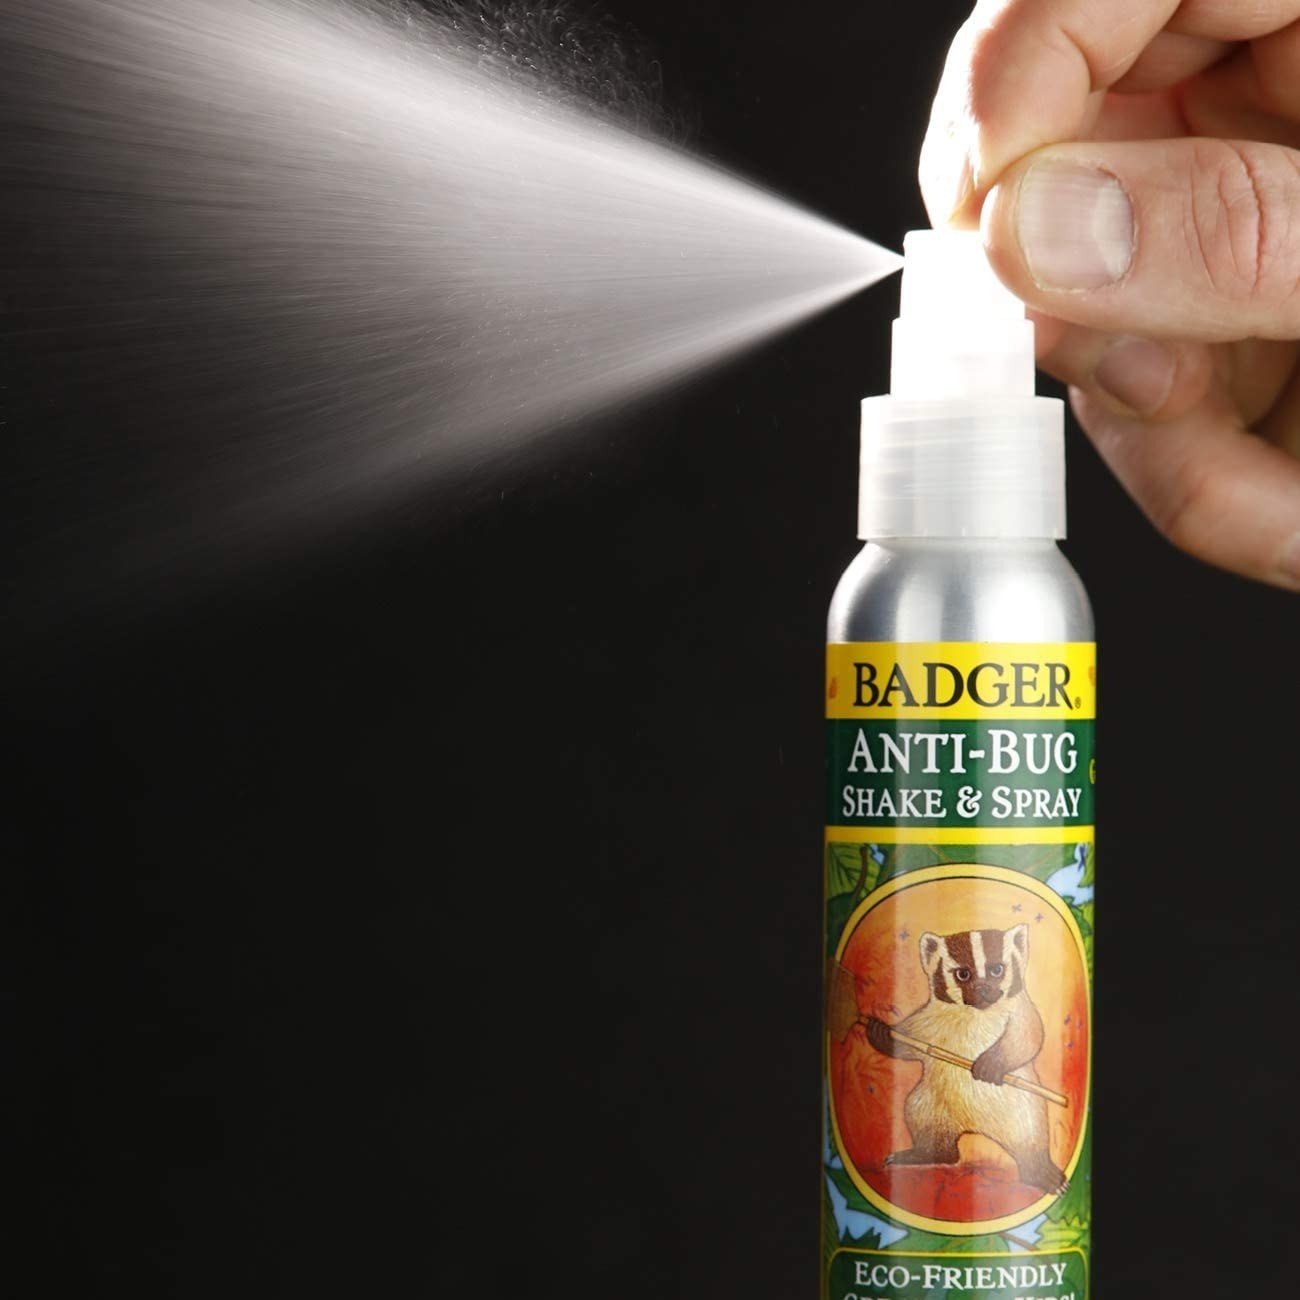 the eco-friendly spray